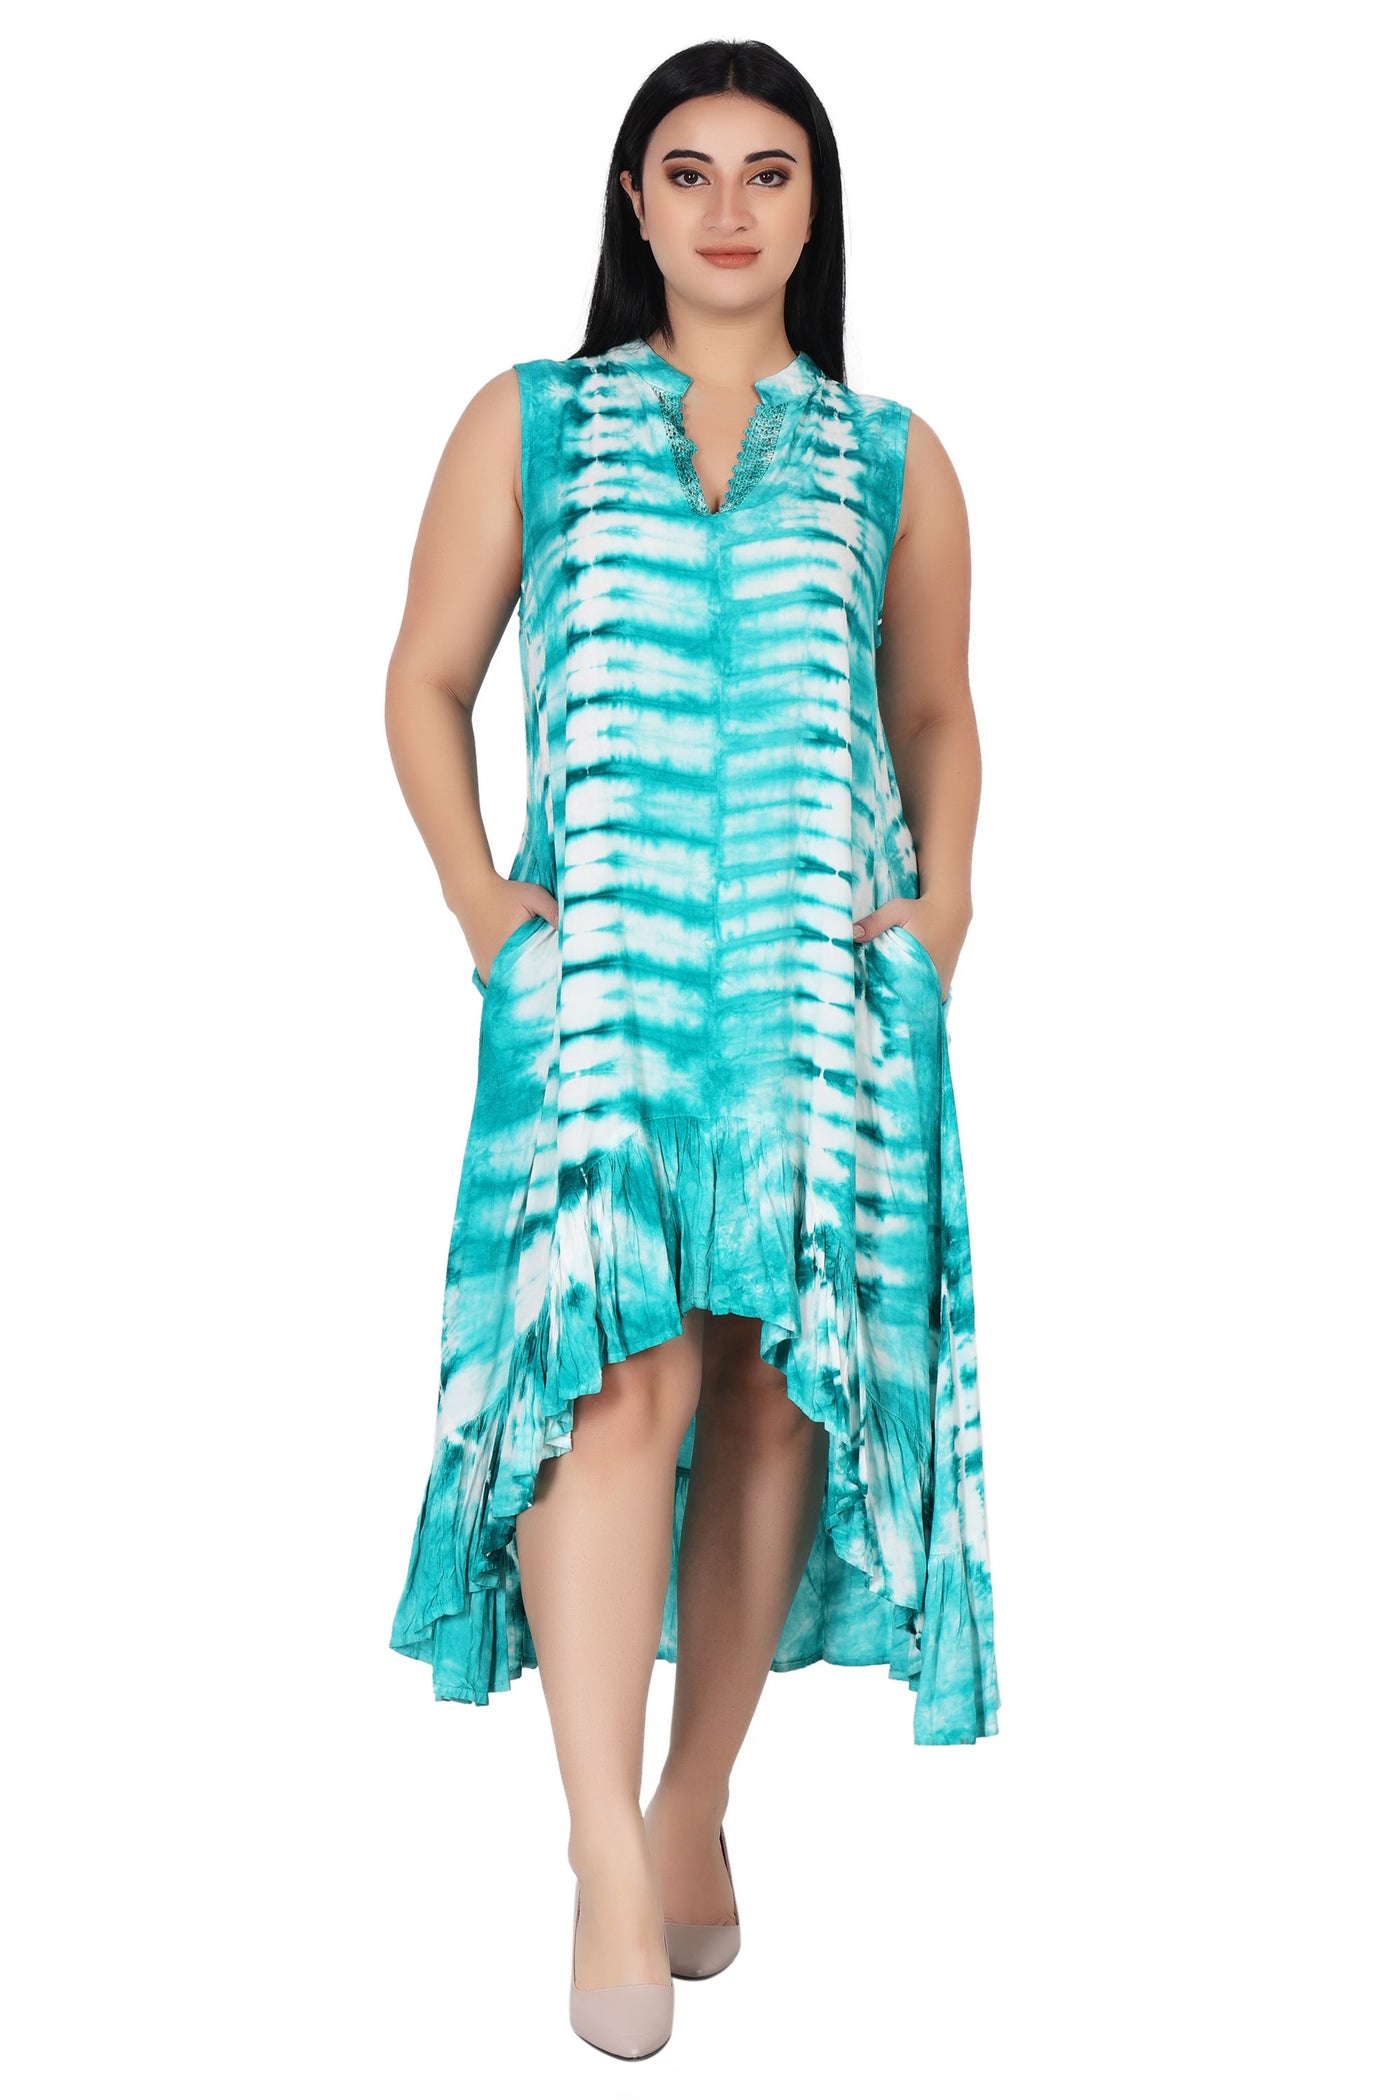 Laced V-Neck Tie Dye Dress 482133